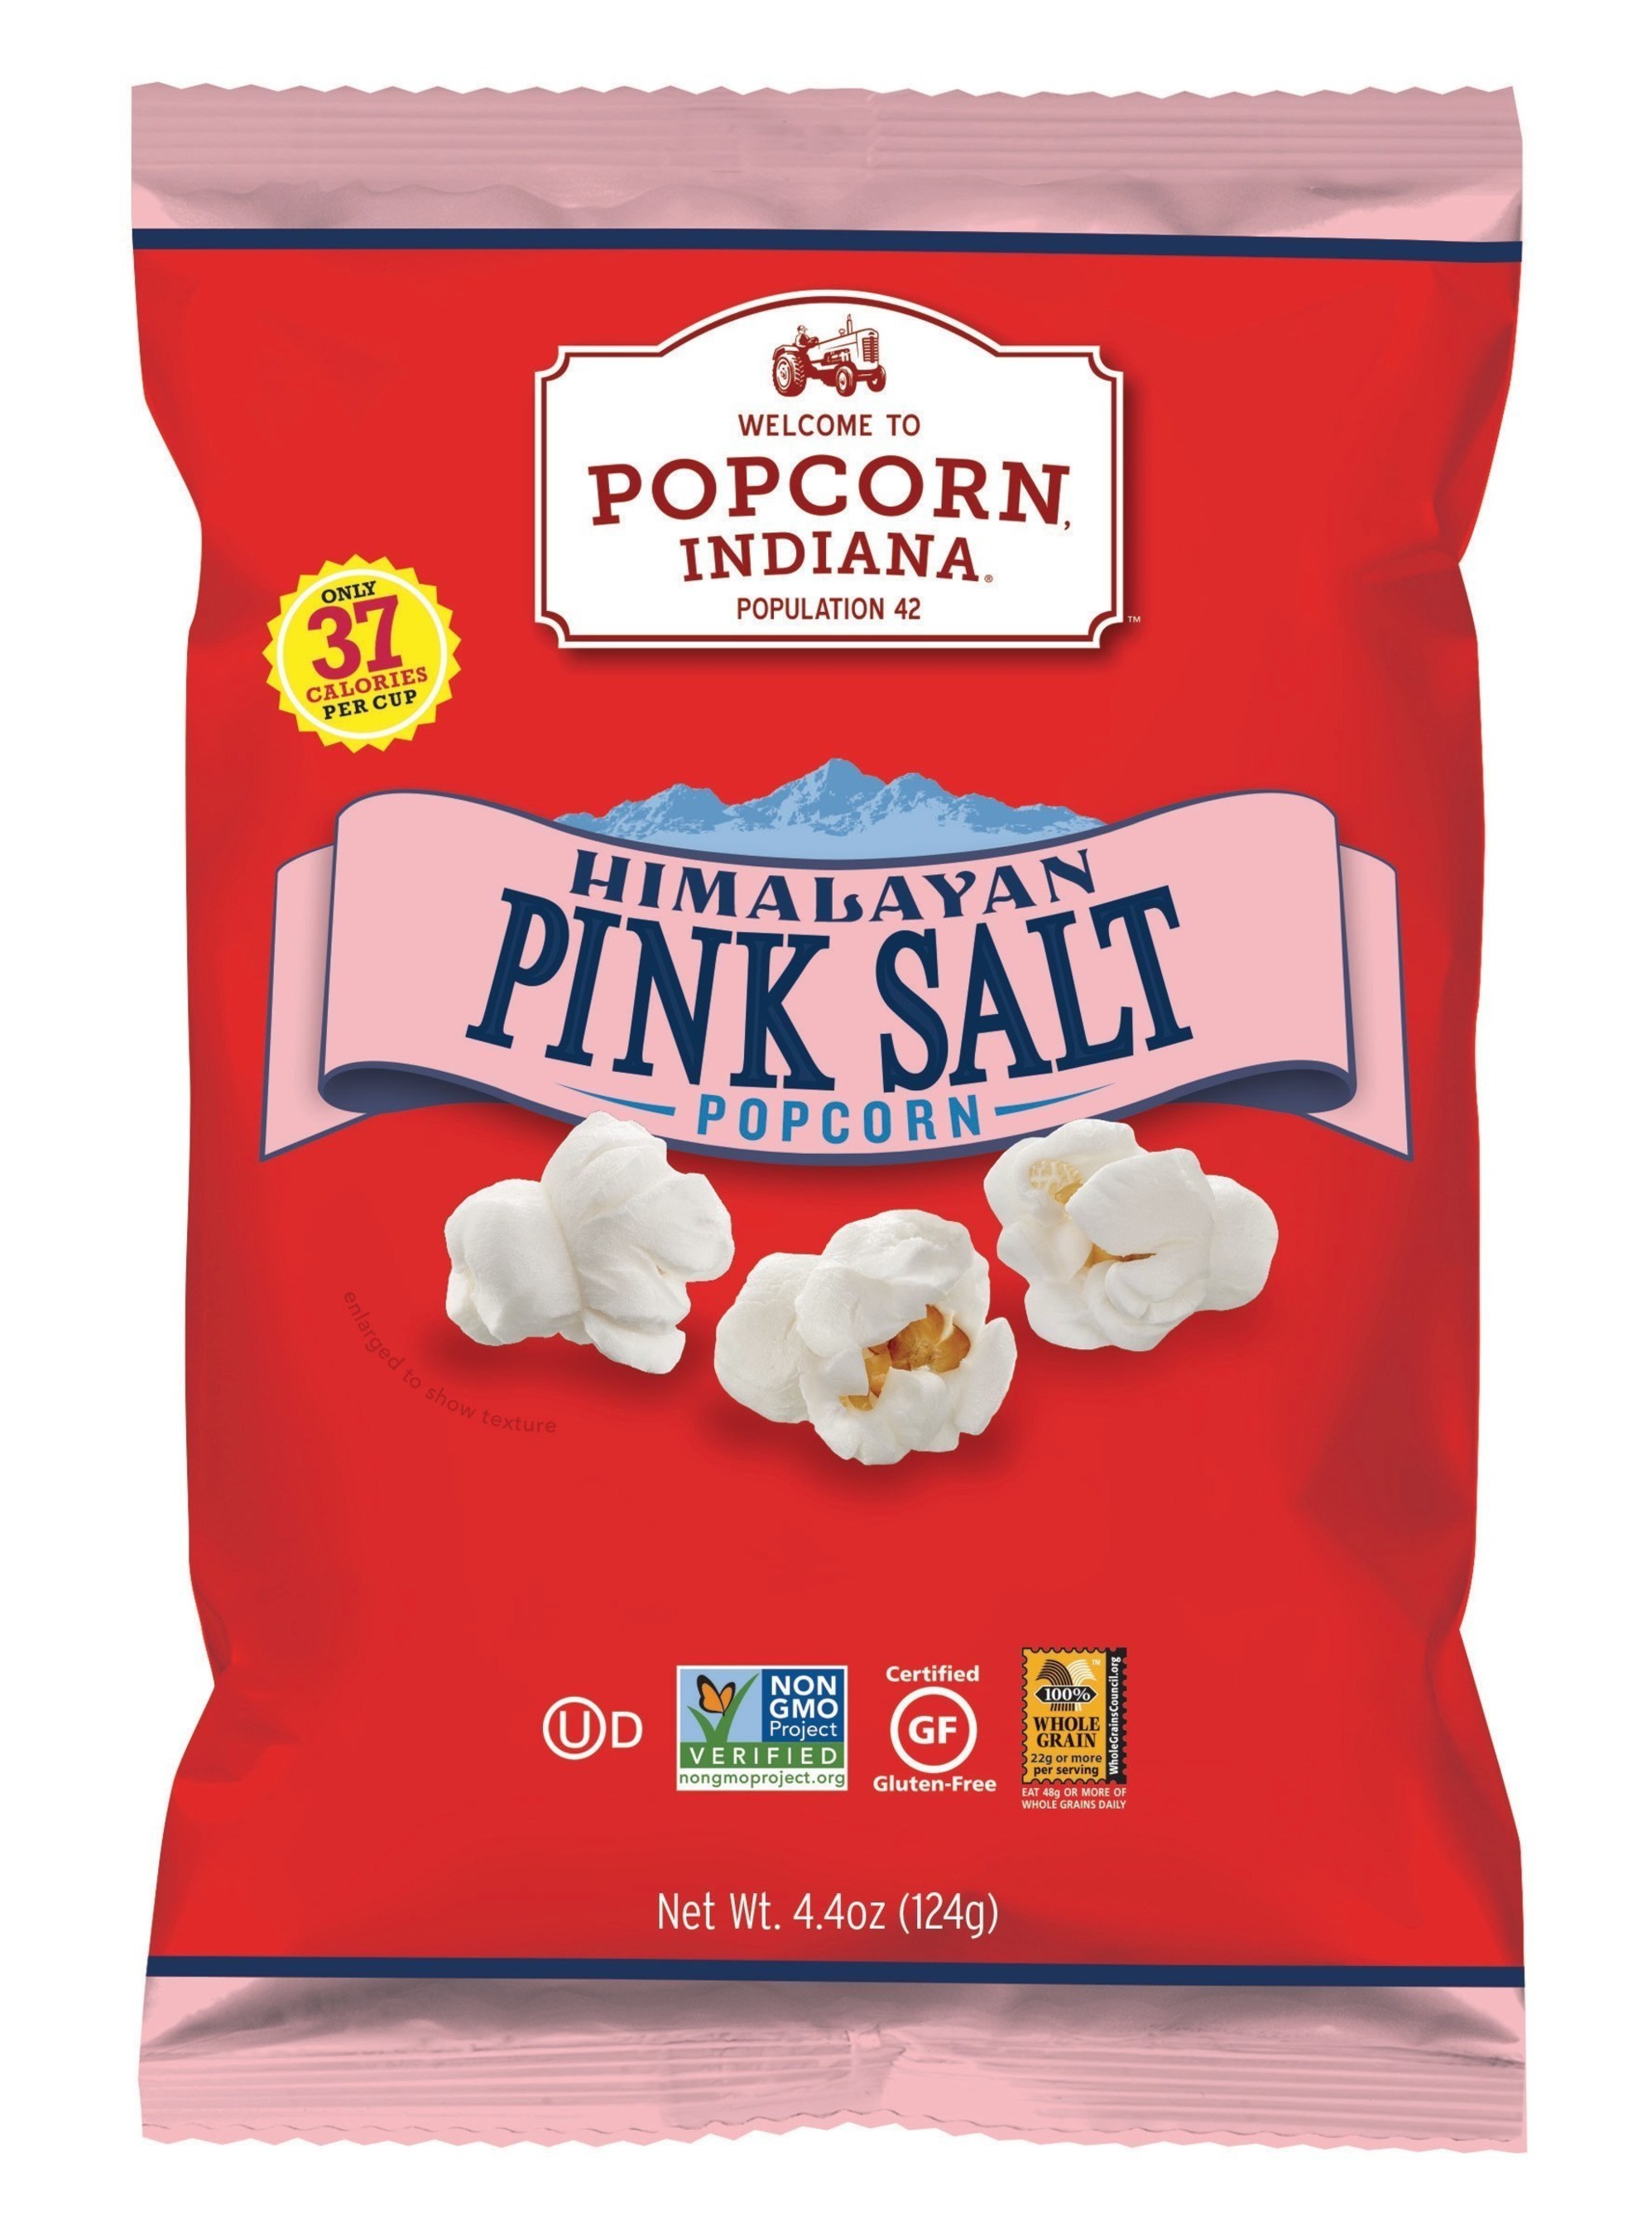 Popcorn, Indiana Himalayan Pink Salt Popcorn